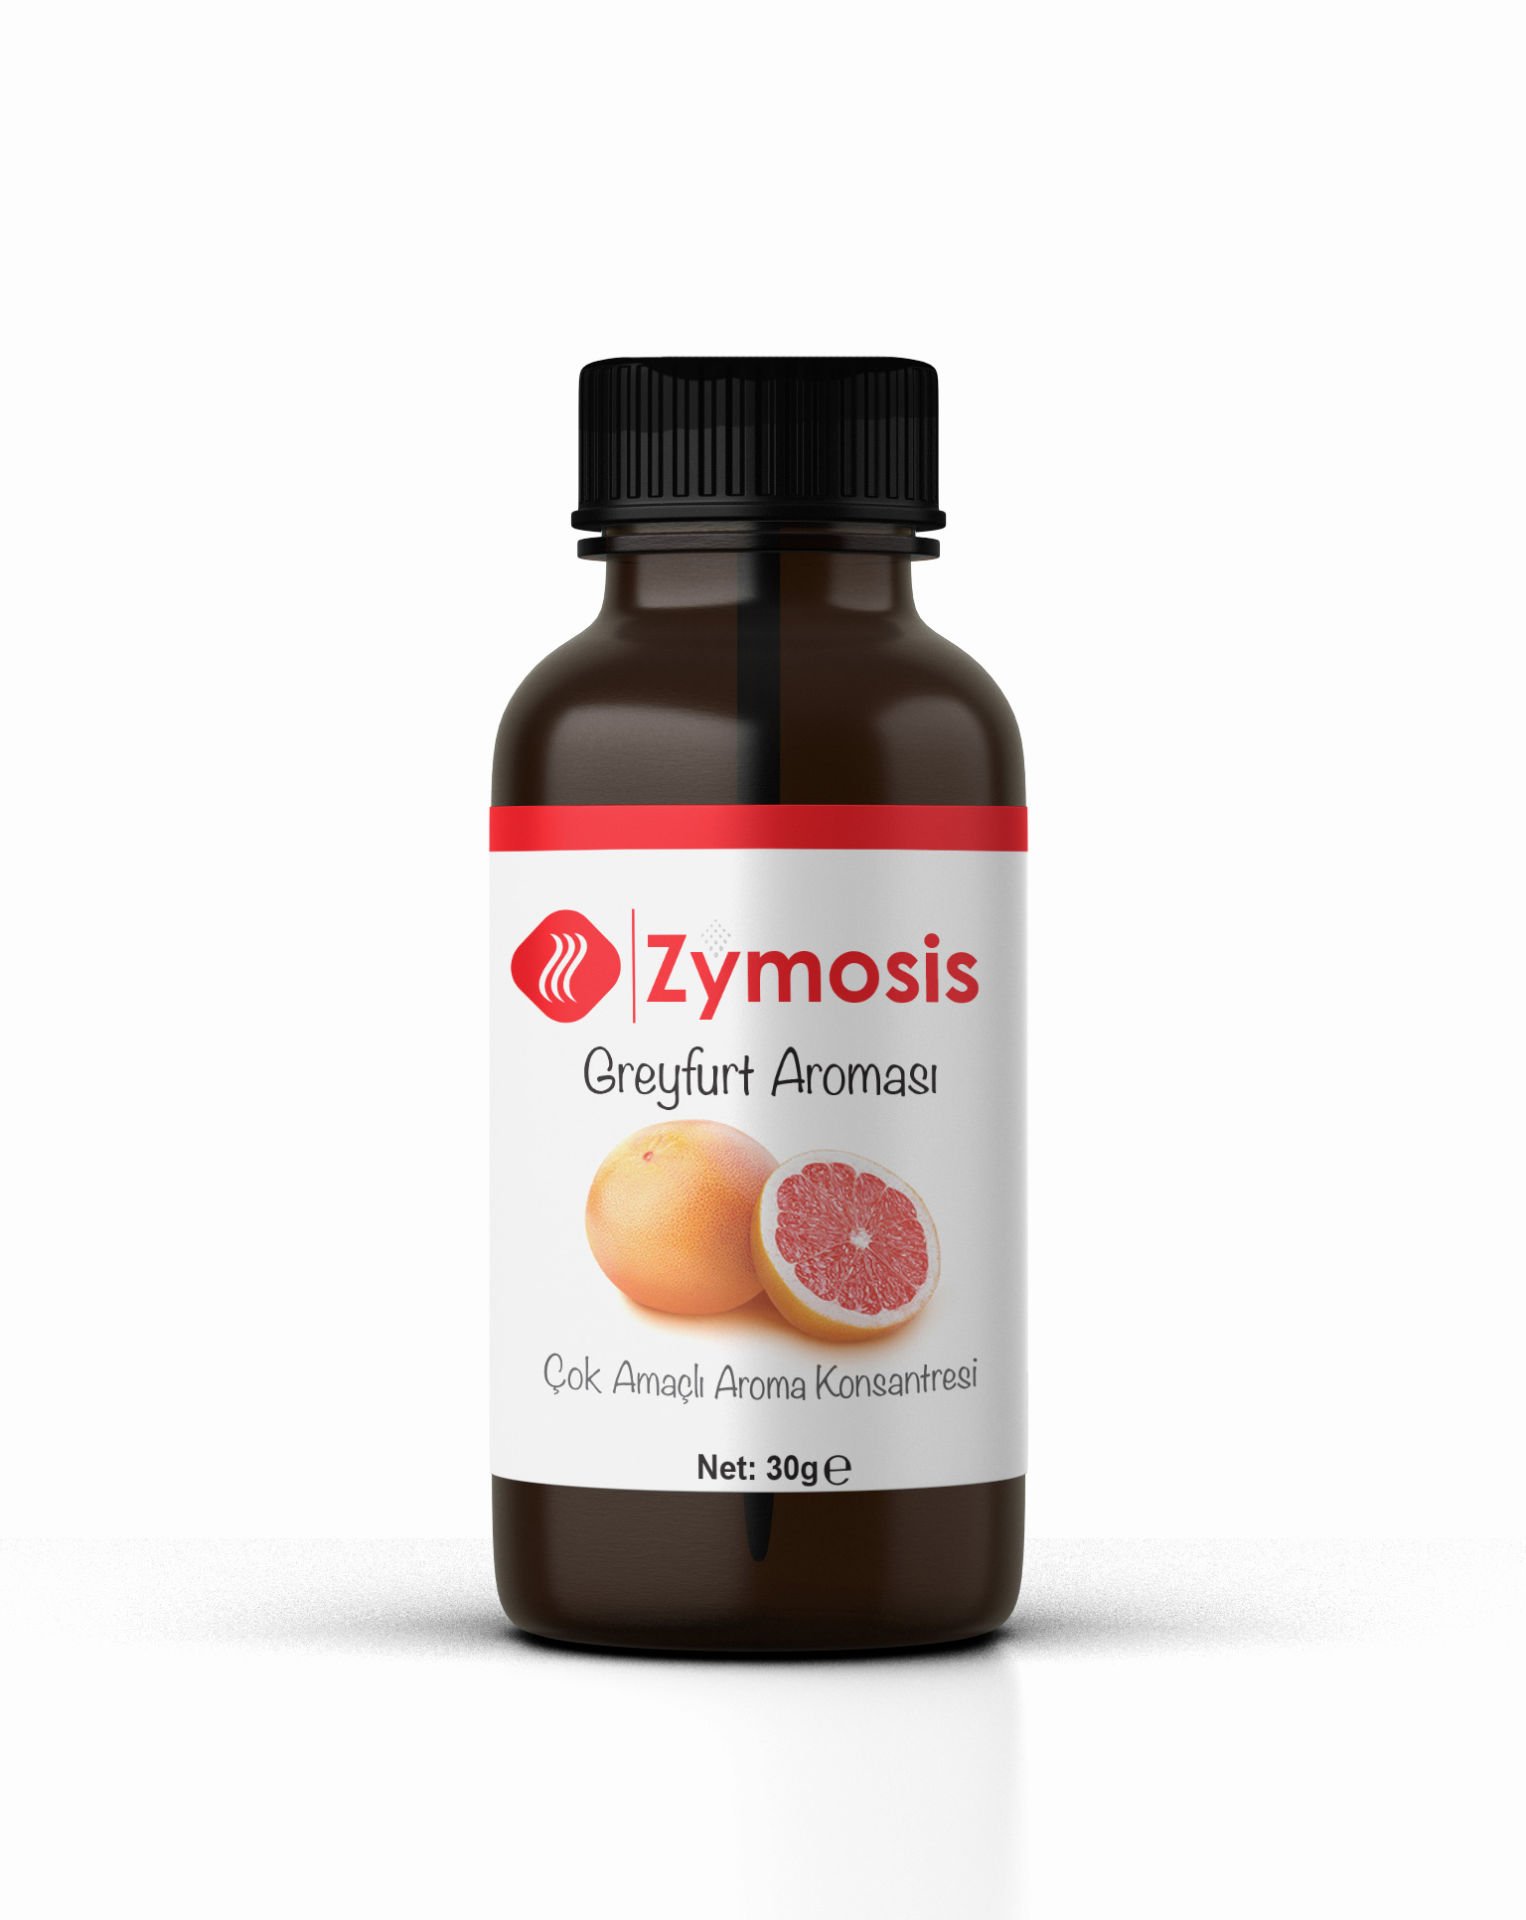 Zymosis Greyfurt Aroması